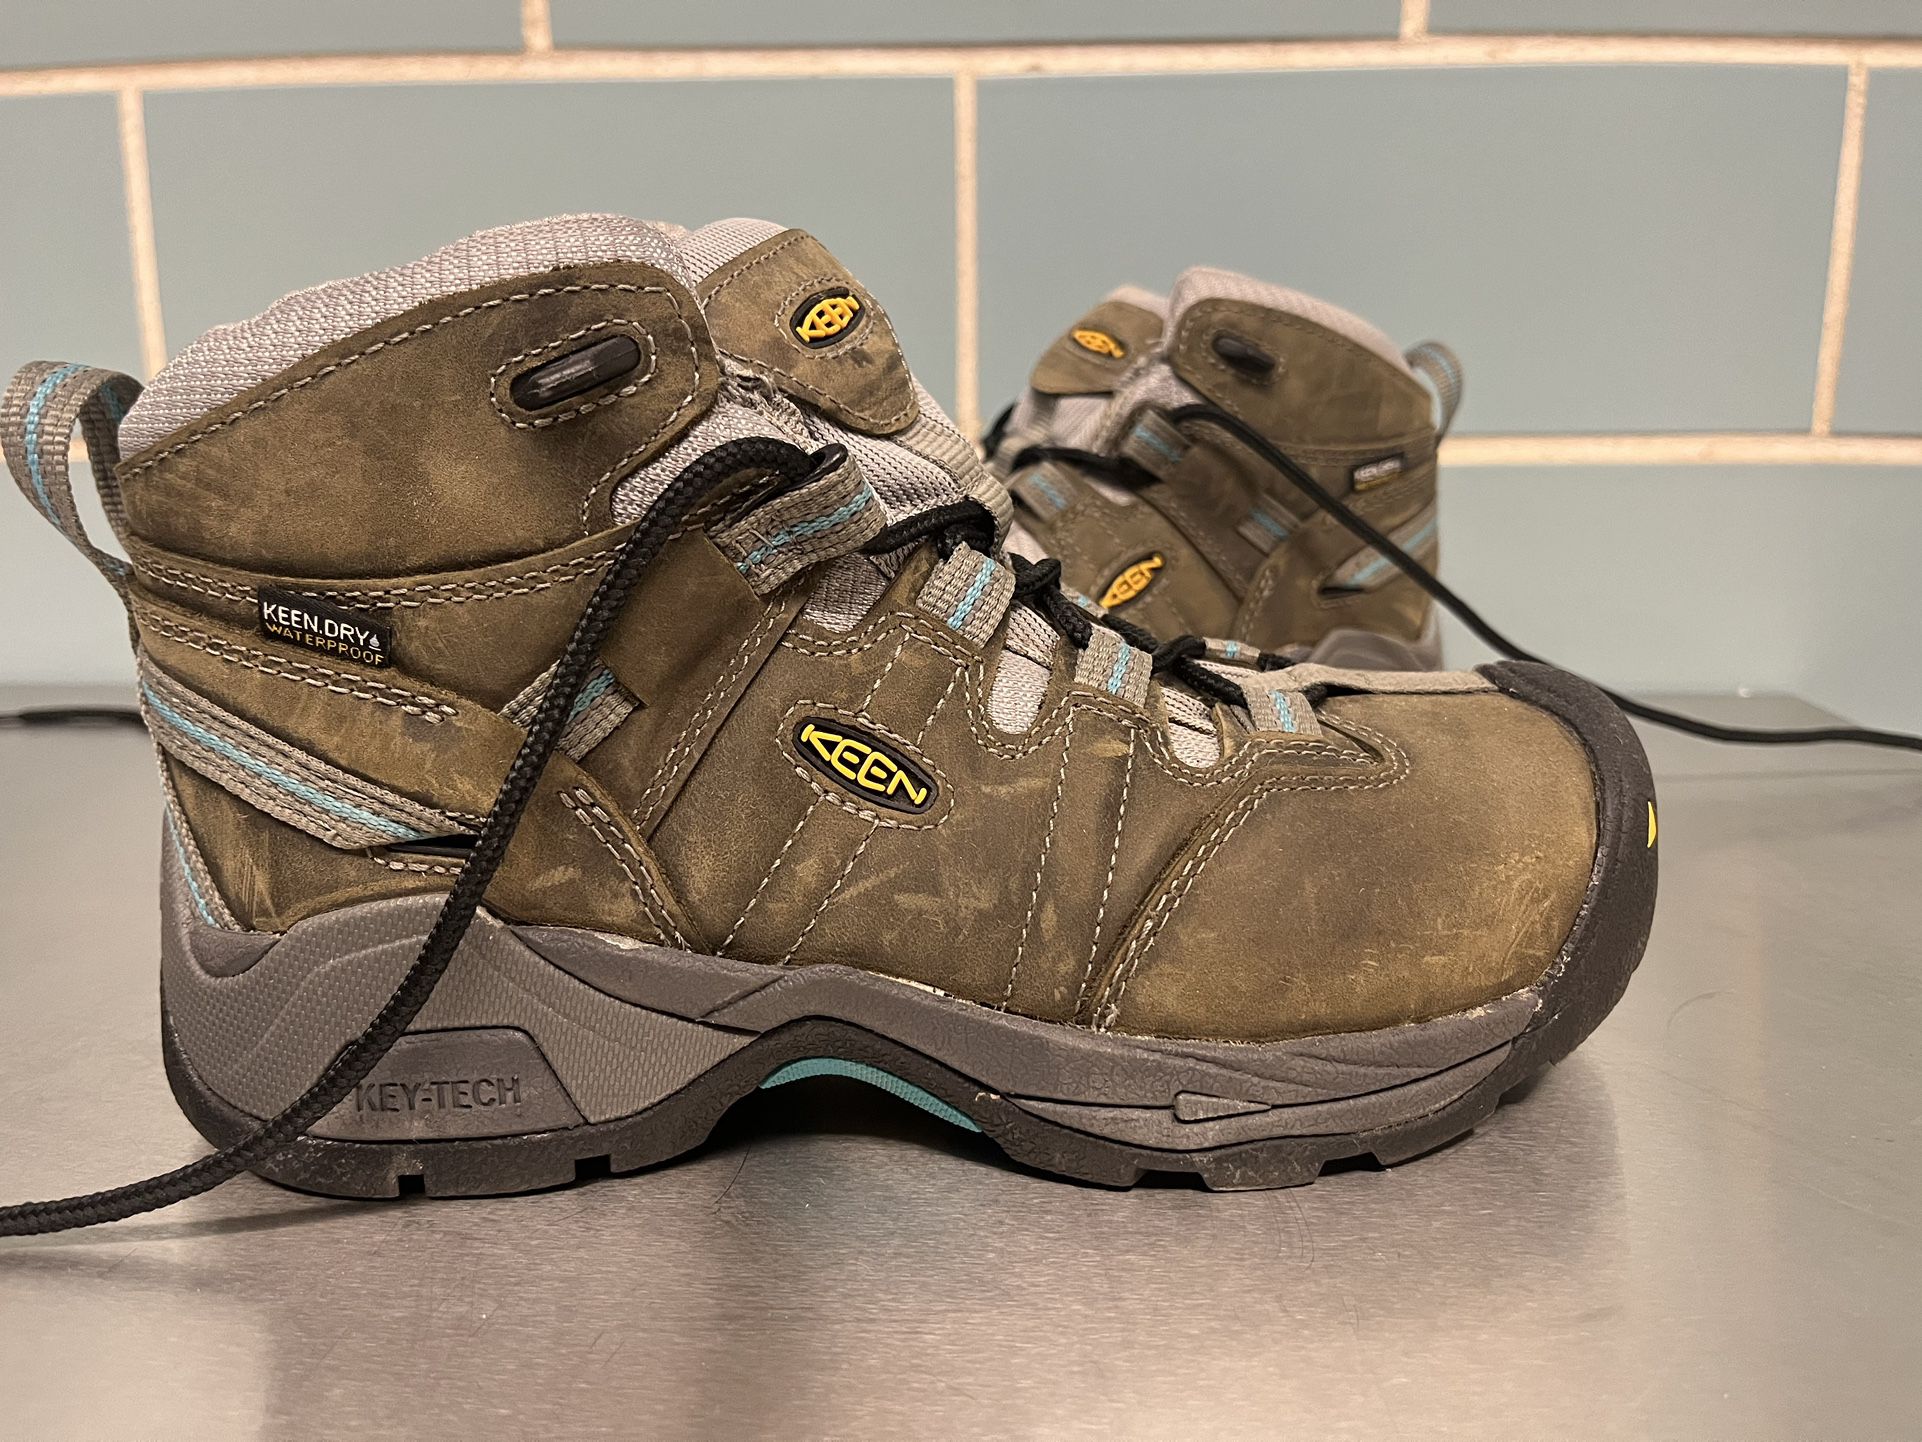 Keen Steel Toe  Waterproof Work Boots Women’s Size 6.5